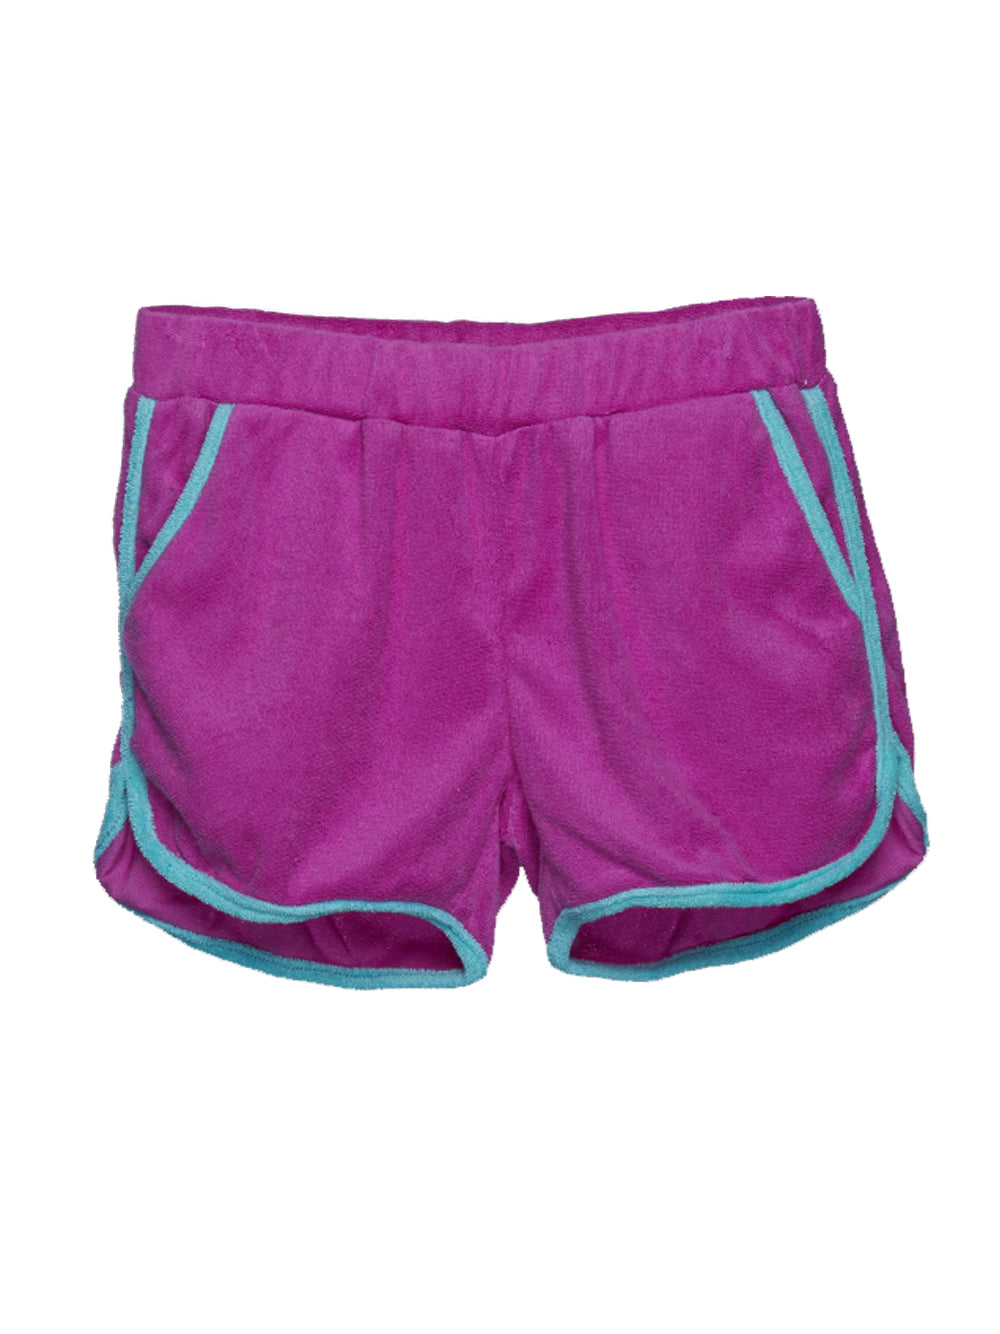 Grape Gym Shorts